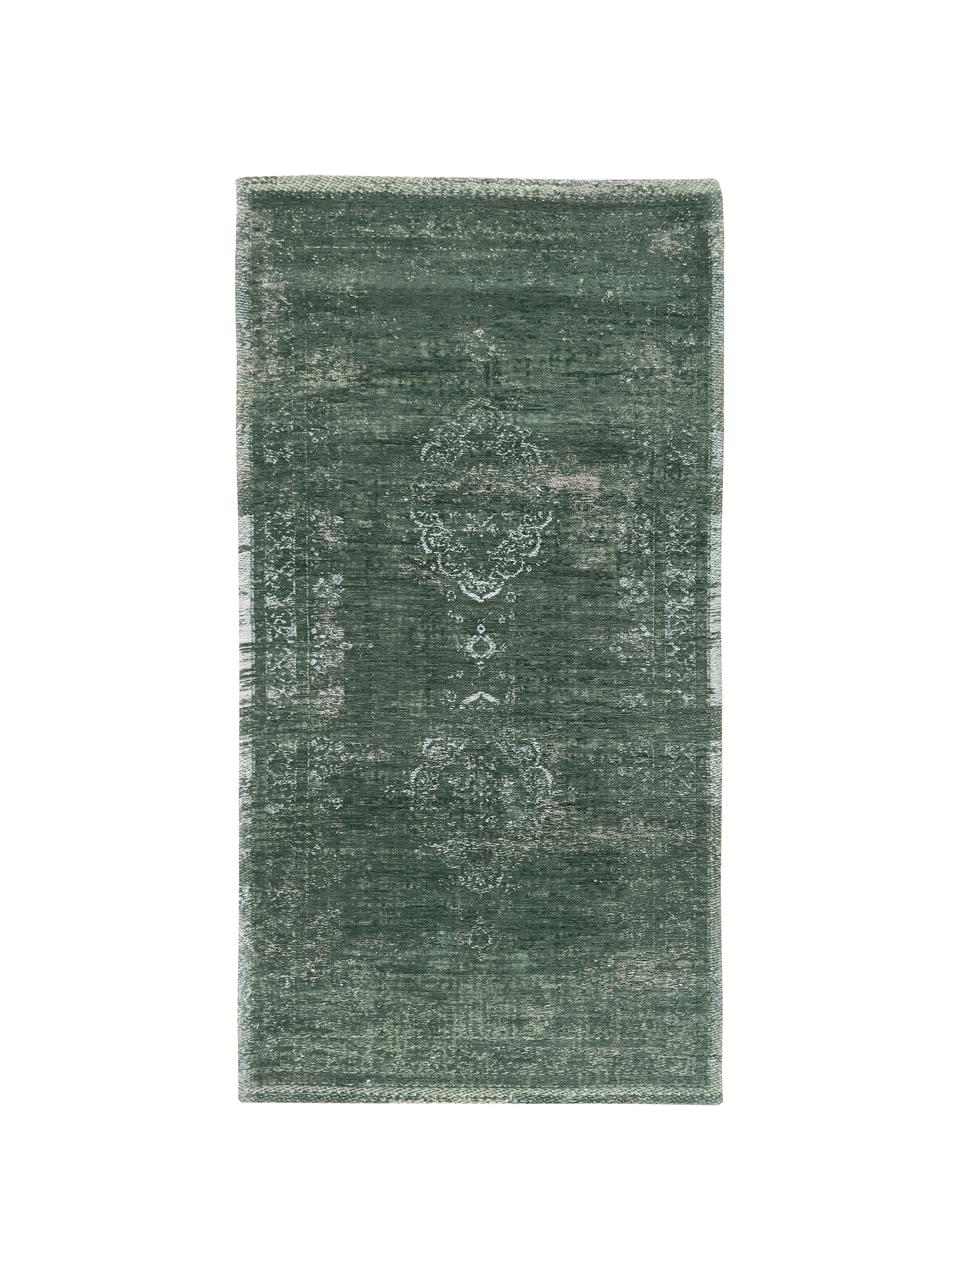 Dywan szenilowy Medaillon, Ciemny zielony, S 140 x D 200 cm (Rozmiar S)